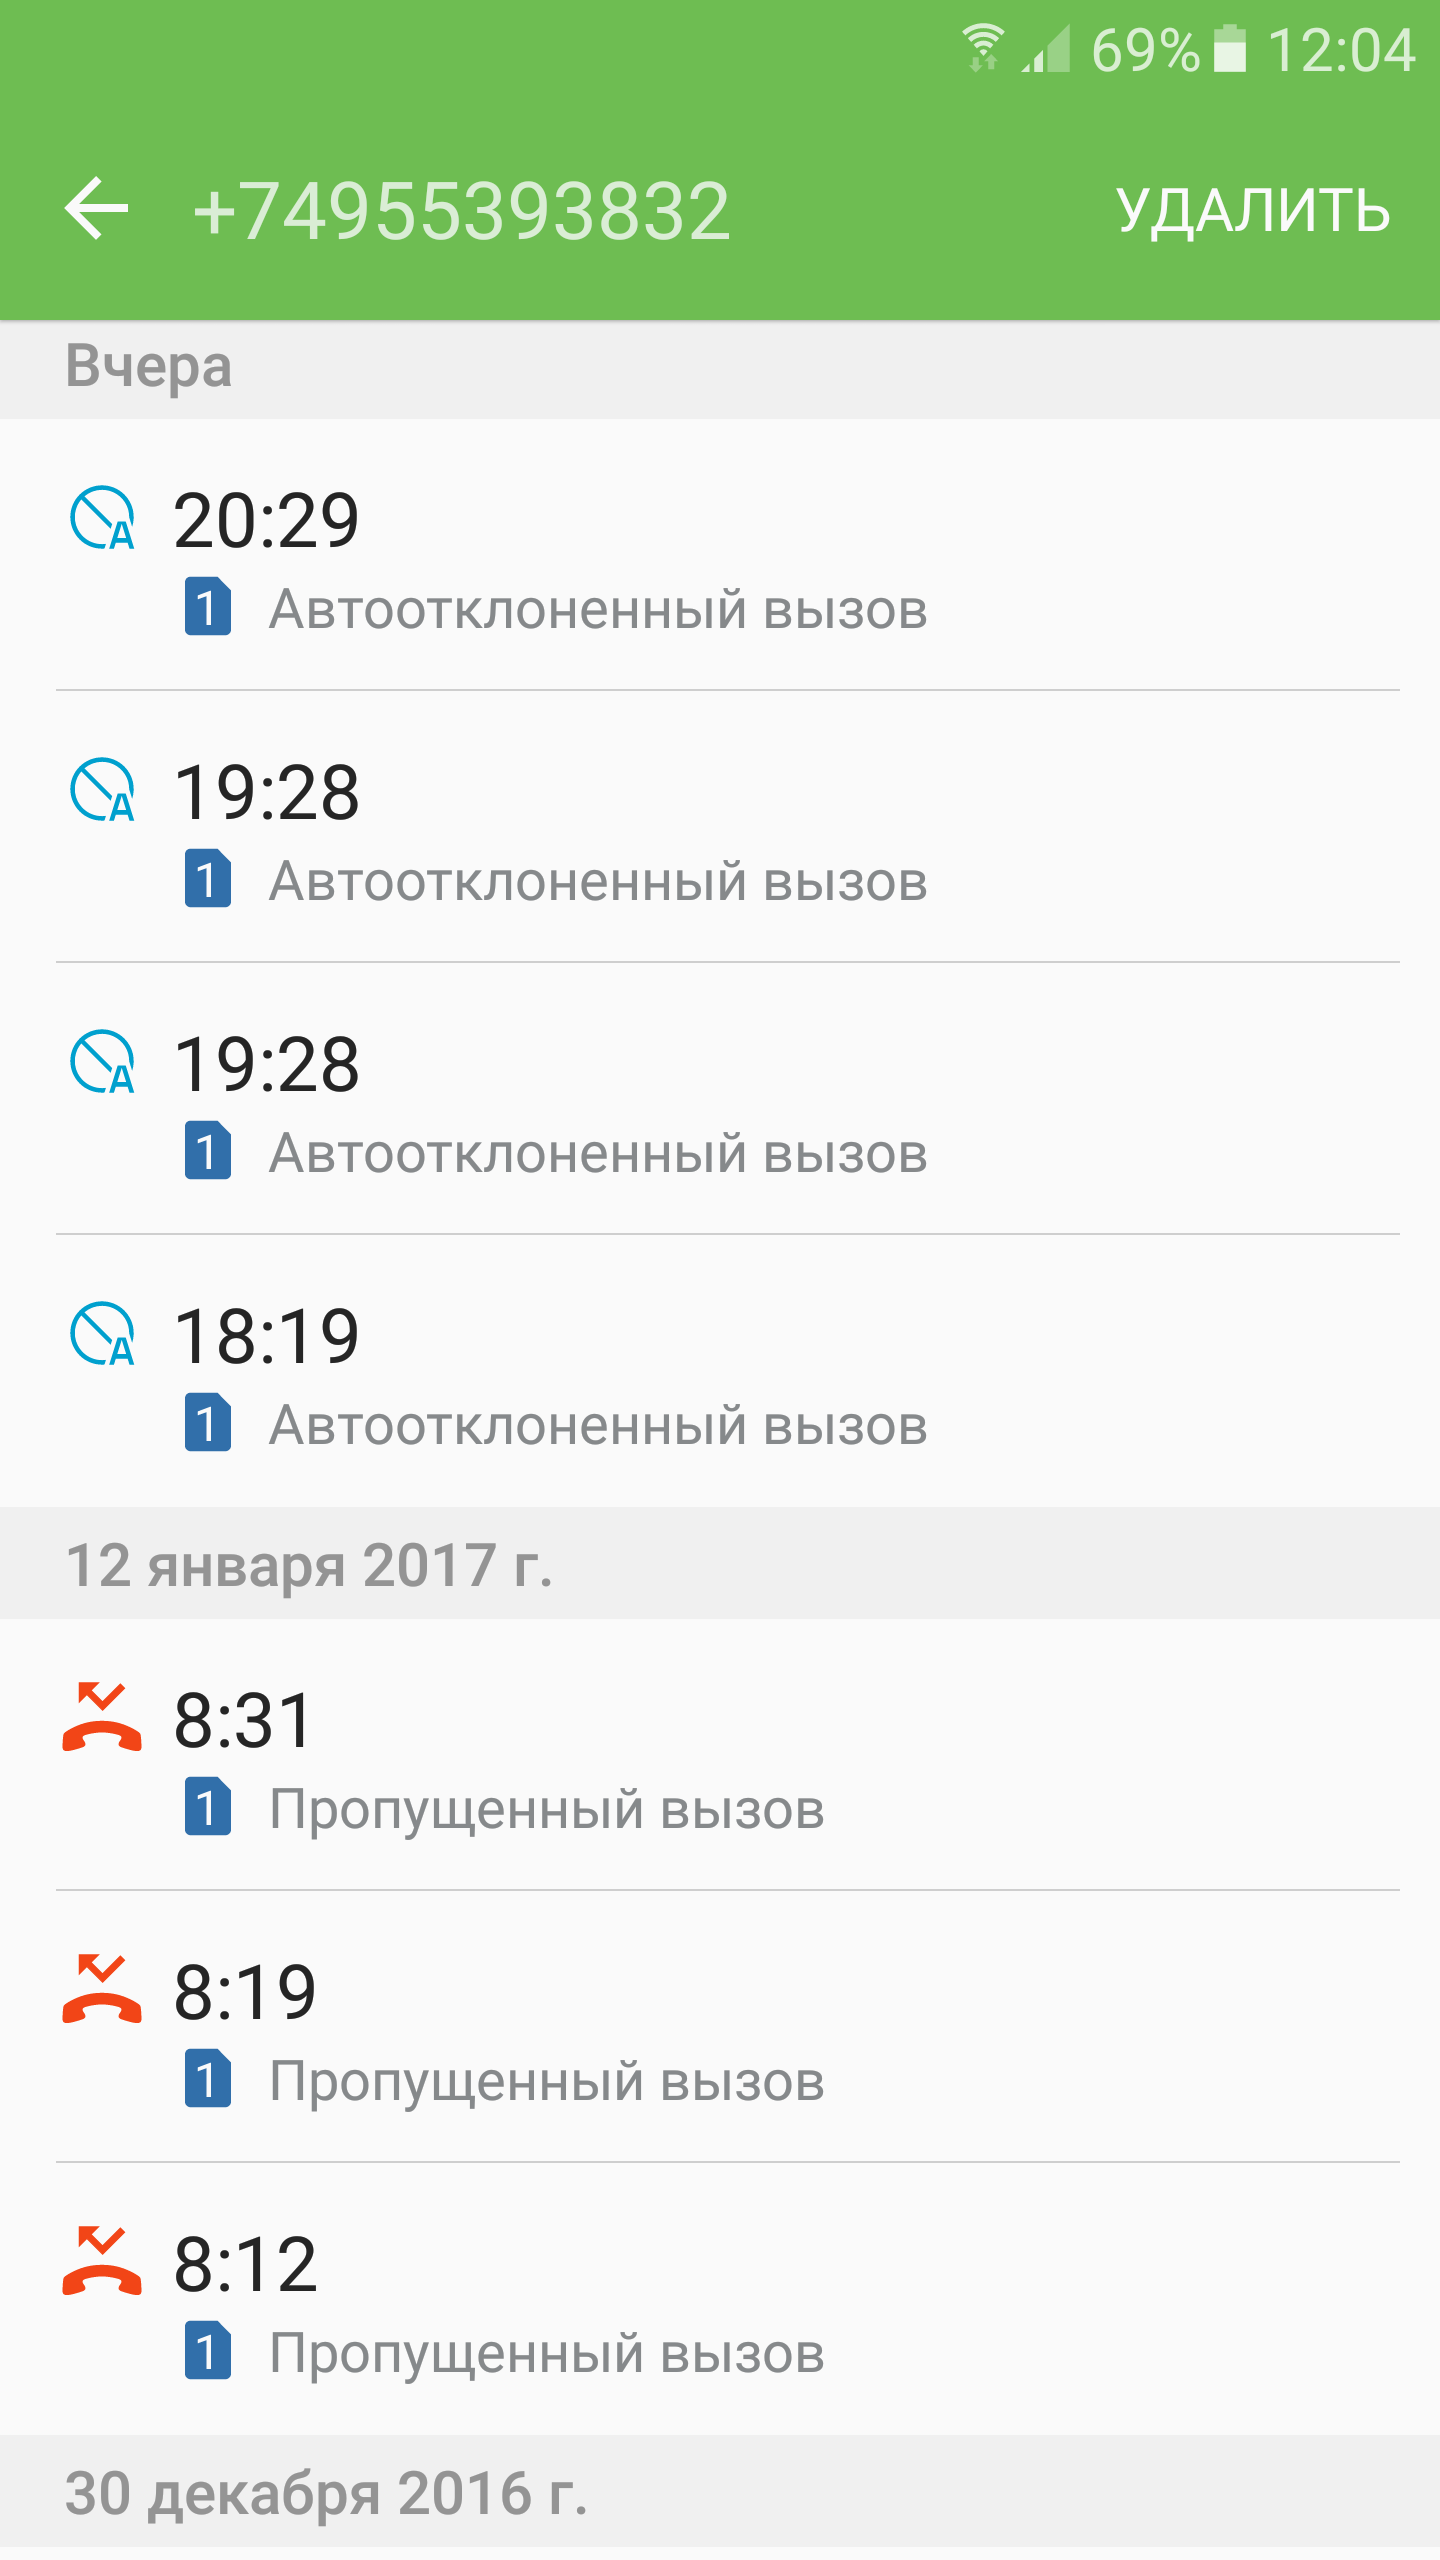 Саяногорск Инфо - screenshot_20170114-120419.png, Скачано: 552